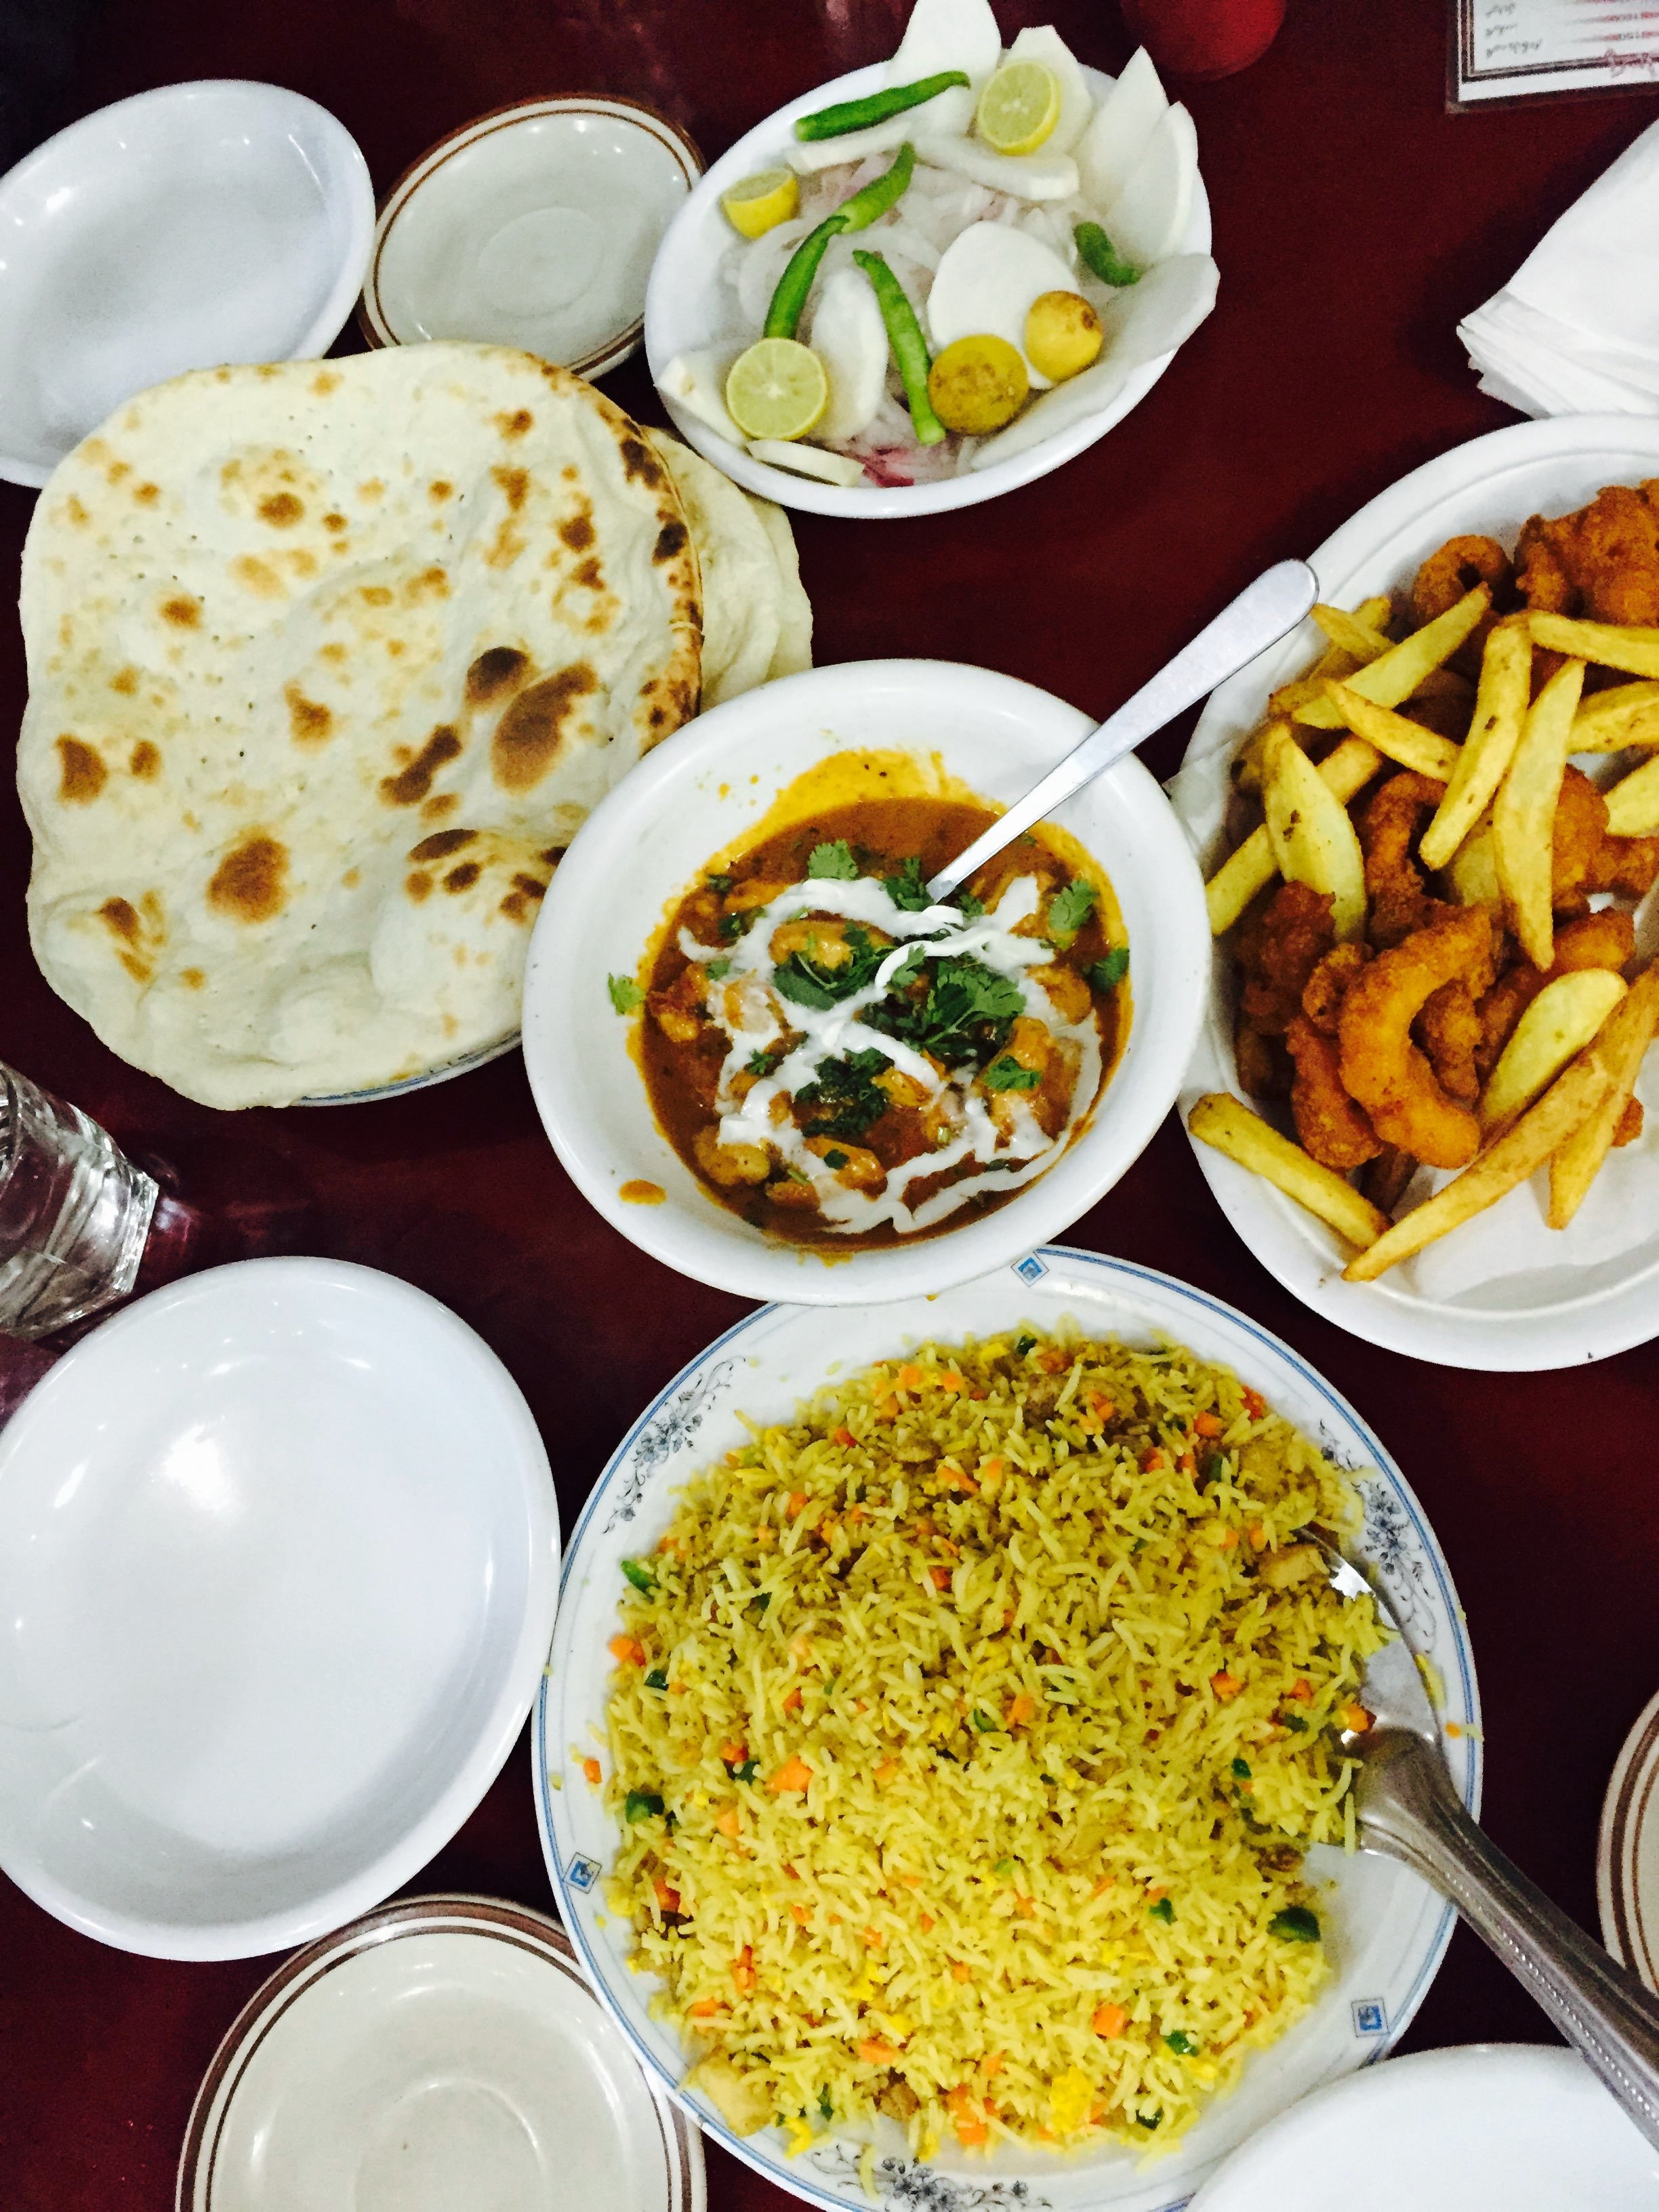 而且这里食物也很好吃,是当地最好吃的一家巴基斯坦餐厅